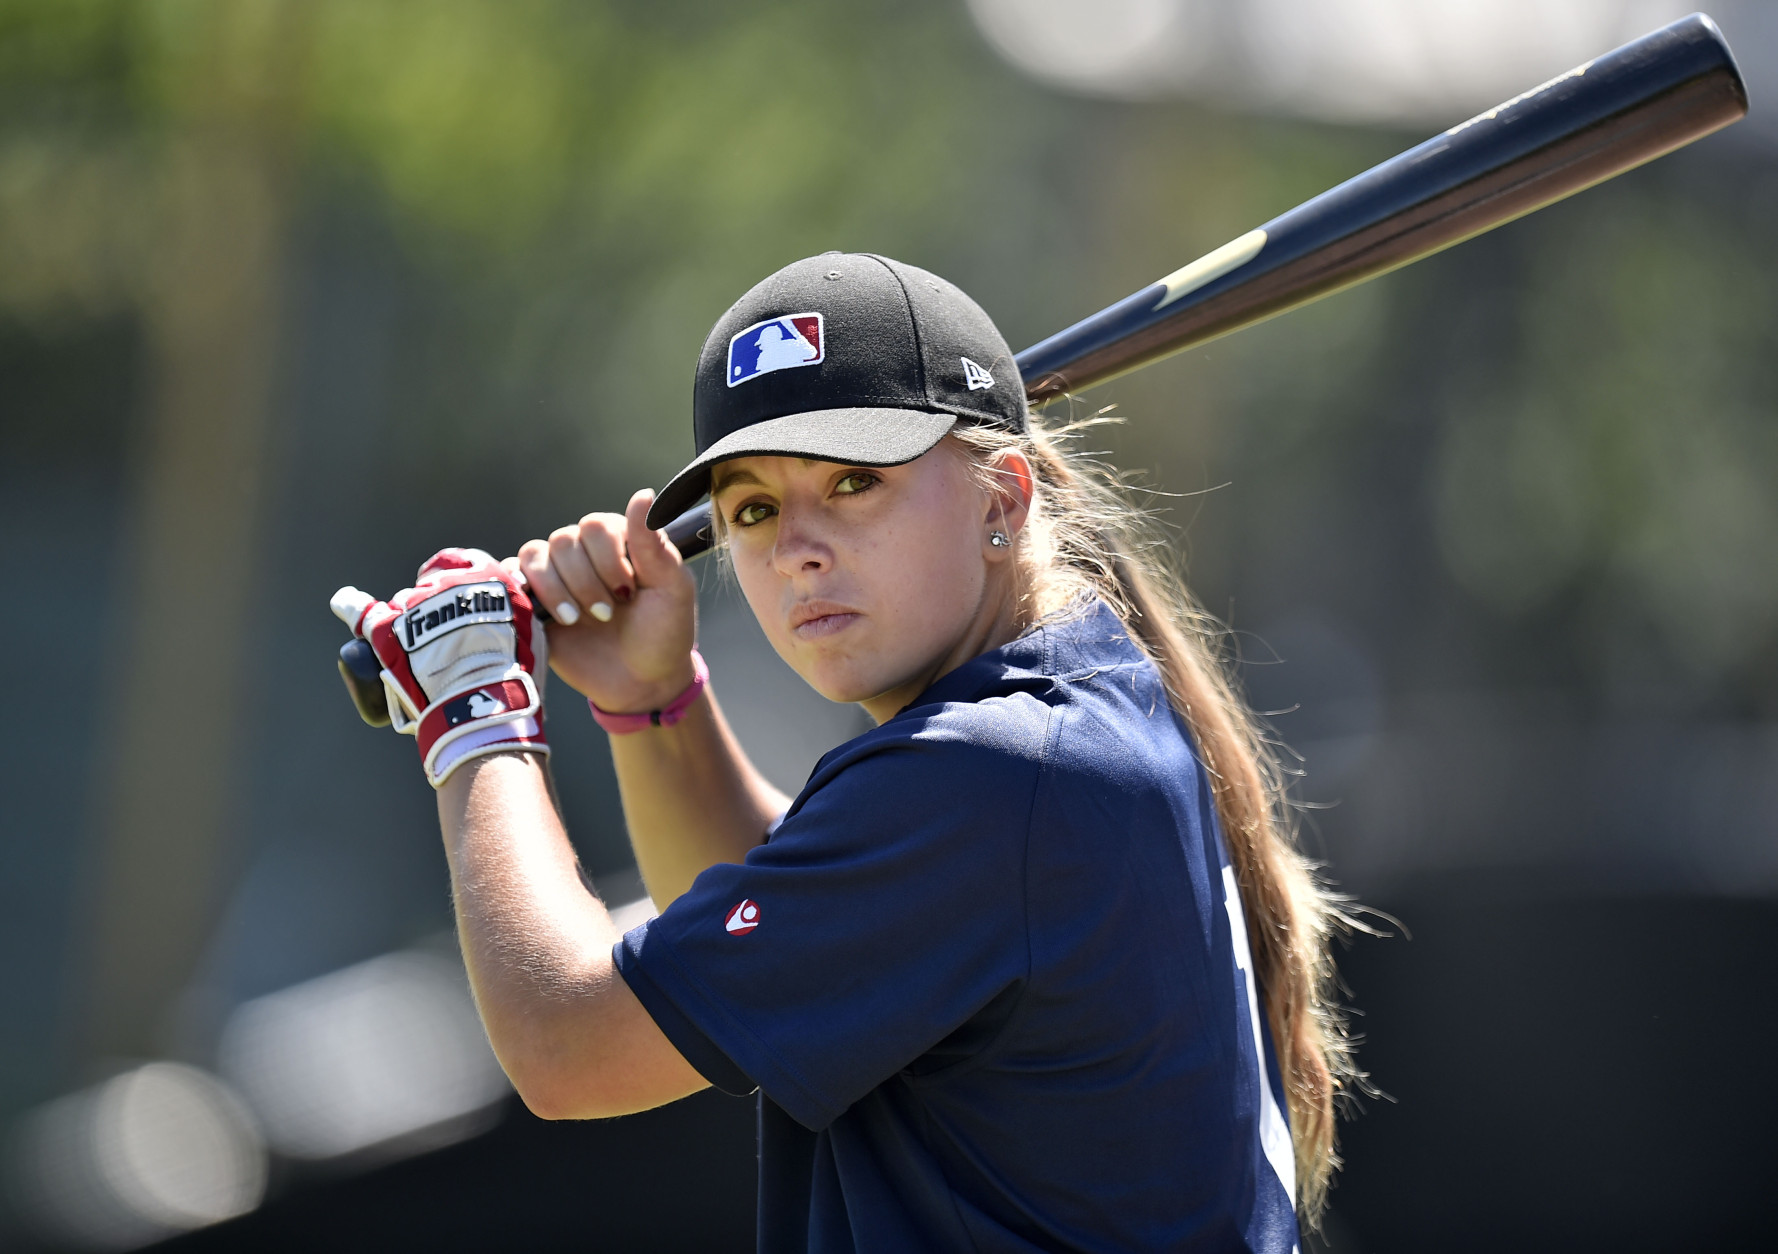 Girl playing baseball photo